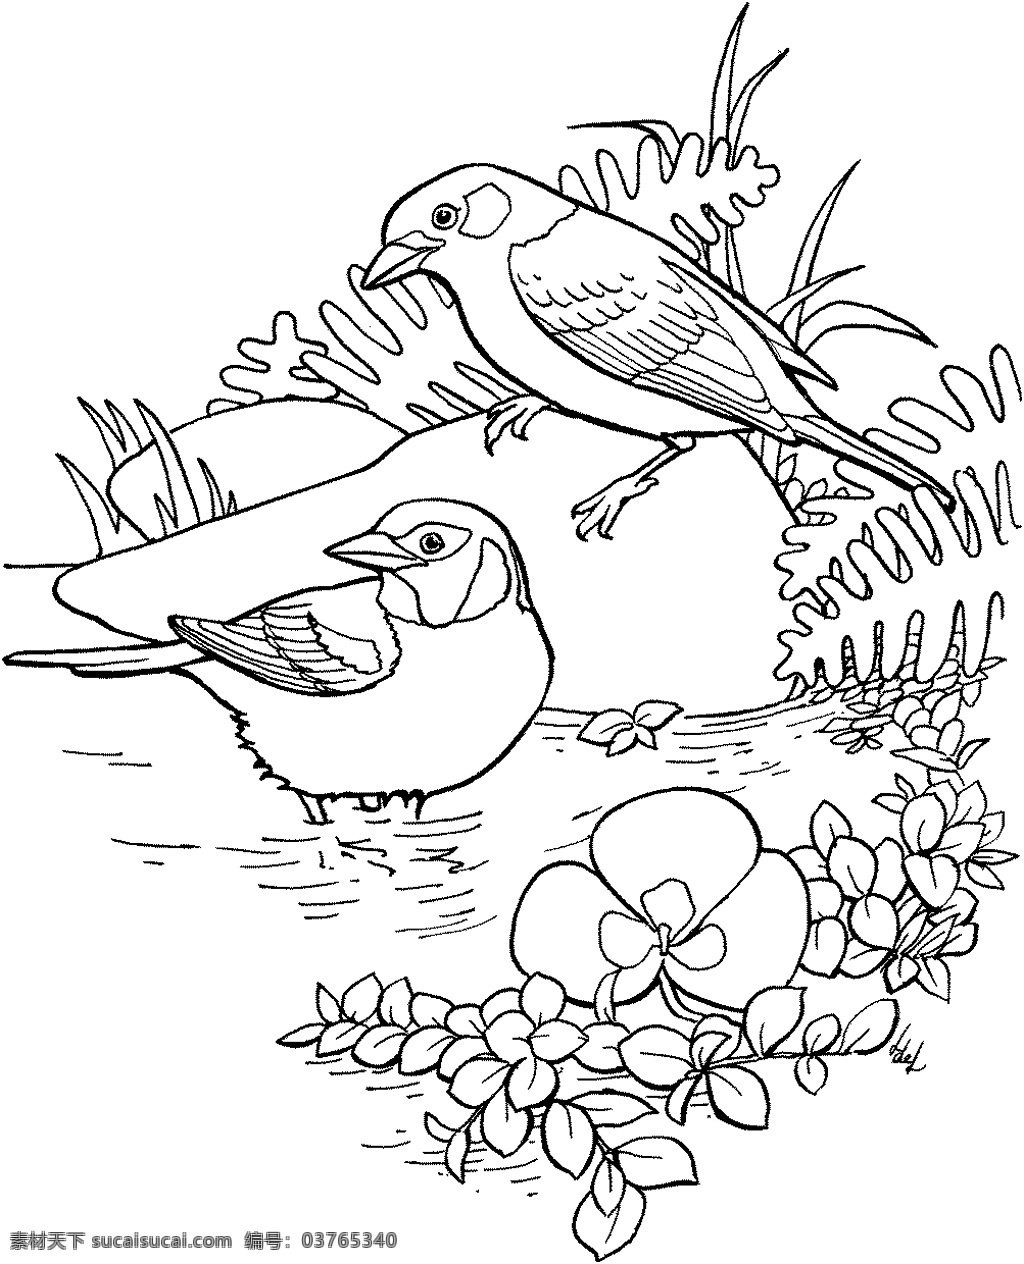 鸟类素描 动物素描 动物手绘画 设计素材 动物专辑 素描速写 书画美术 白色